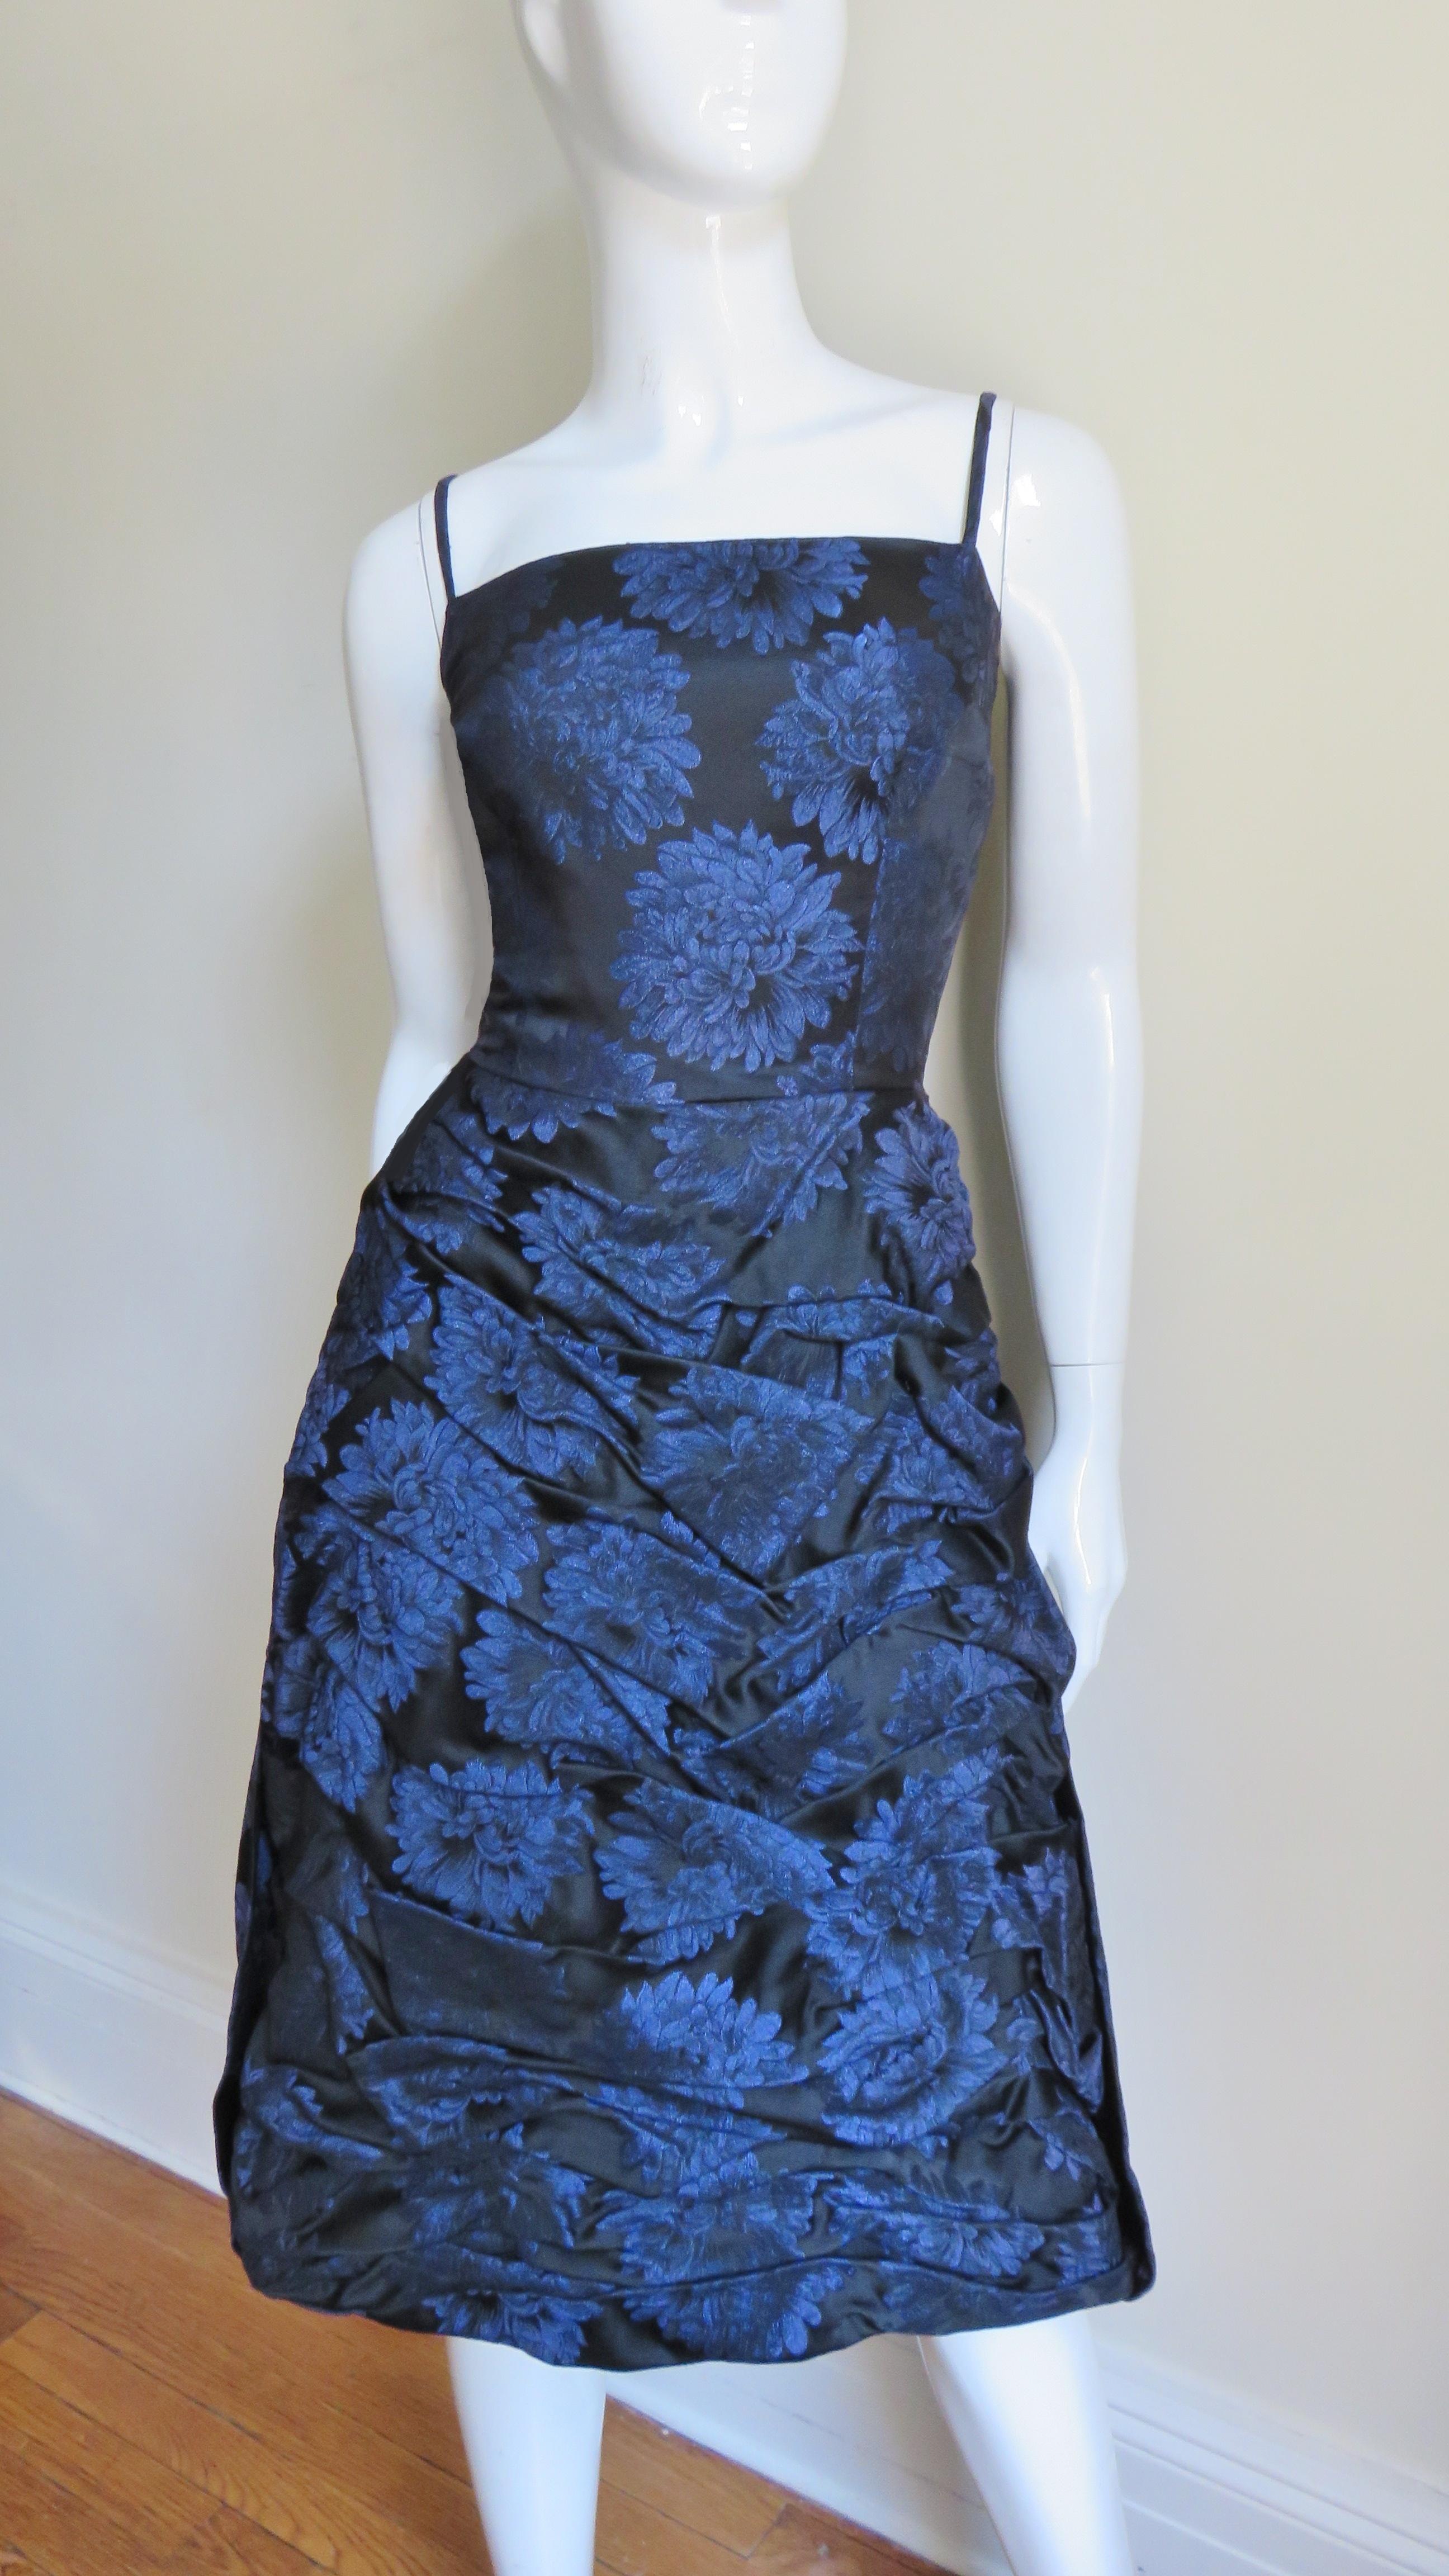 Ein fabelhaftes blau auf schwarzem Chrysanthemenmuster Seidendamastkleid von Sher Lee.  Es hat ein tailliertes Mieder mit Spaghetti-Trägern und einen unglaublich gerüschten Rock.  Der Rücken ist von der Taille bis zum Rocksaum in einem Wasserfall